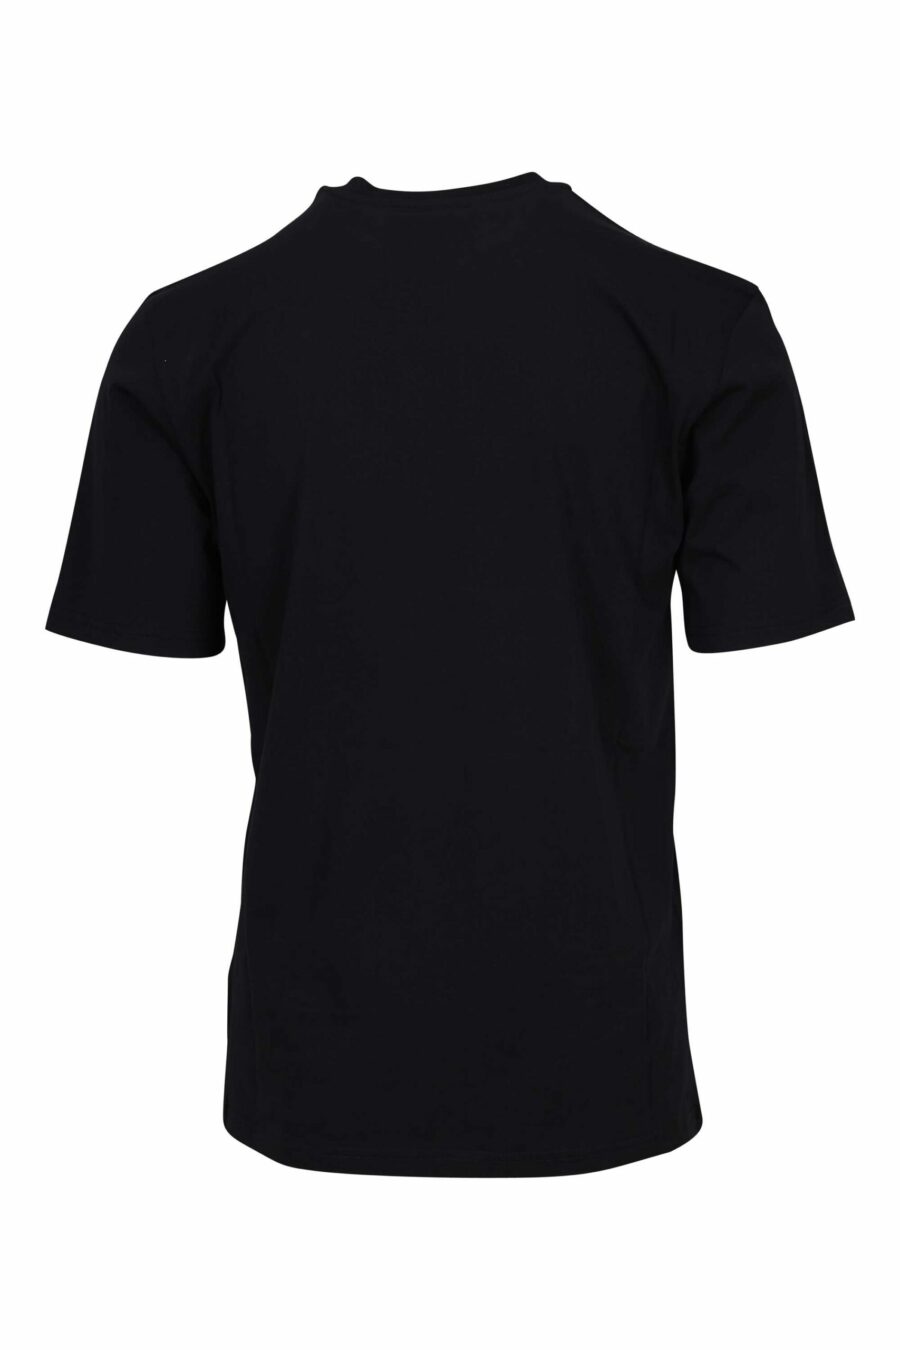 Camiseta negra de algodón orgánico "100% pure moschino" - 667113765150 1 scaled